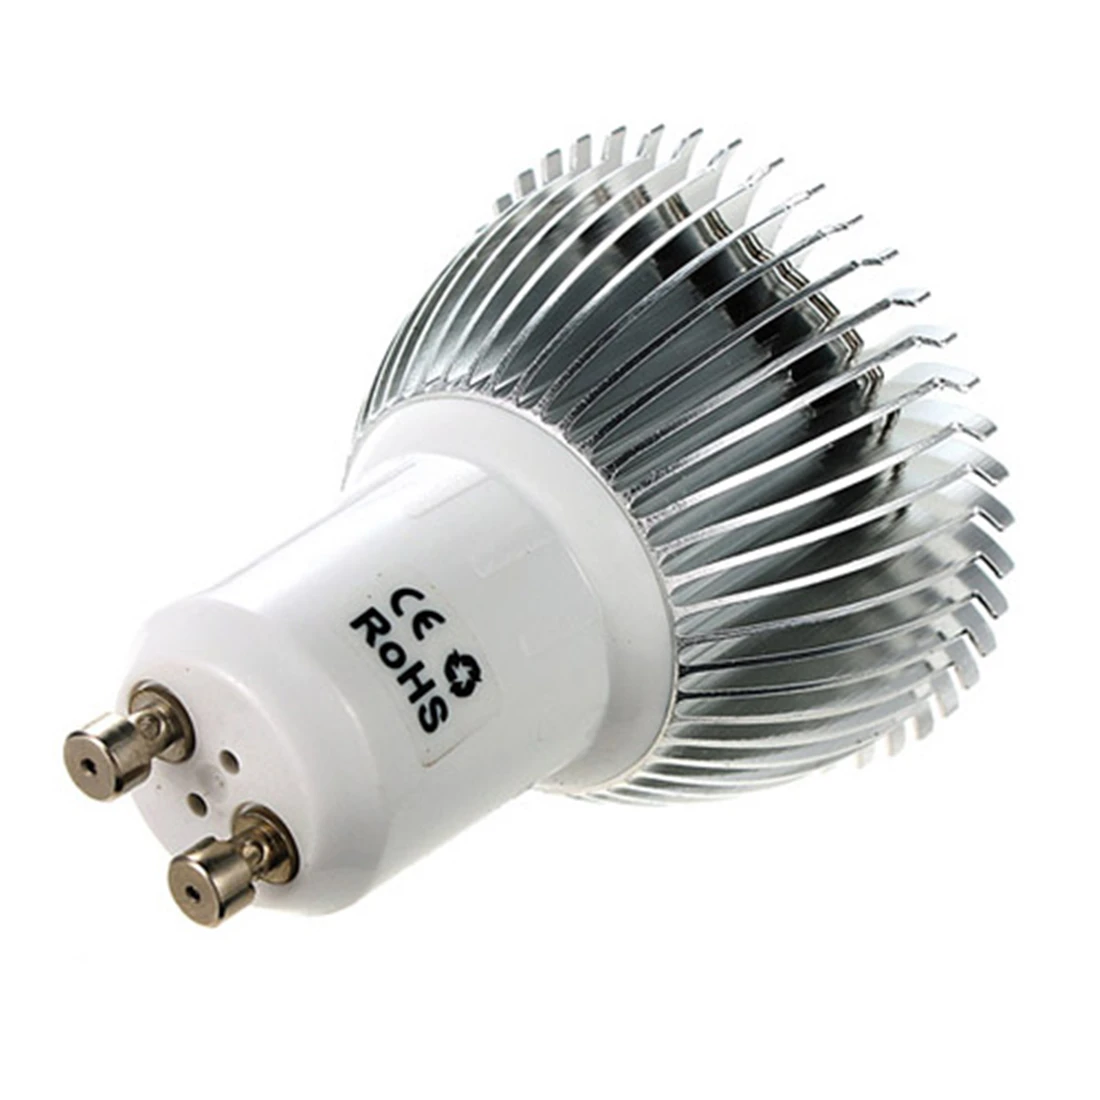 5x6,4 Вт Светодиодный свет лампы GU10 16 Светодиодный 5630 SMD энергосберегающие светодиодные лампы лампа-прожектор лампы теплый белый свет AC 85-265 V